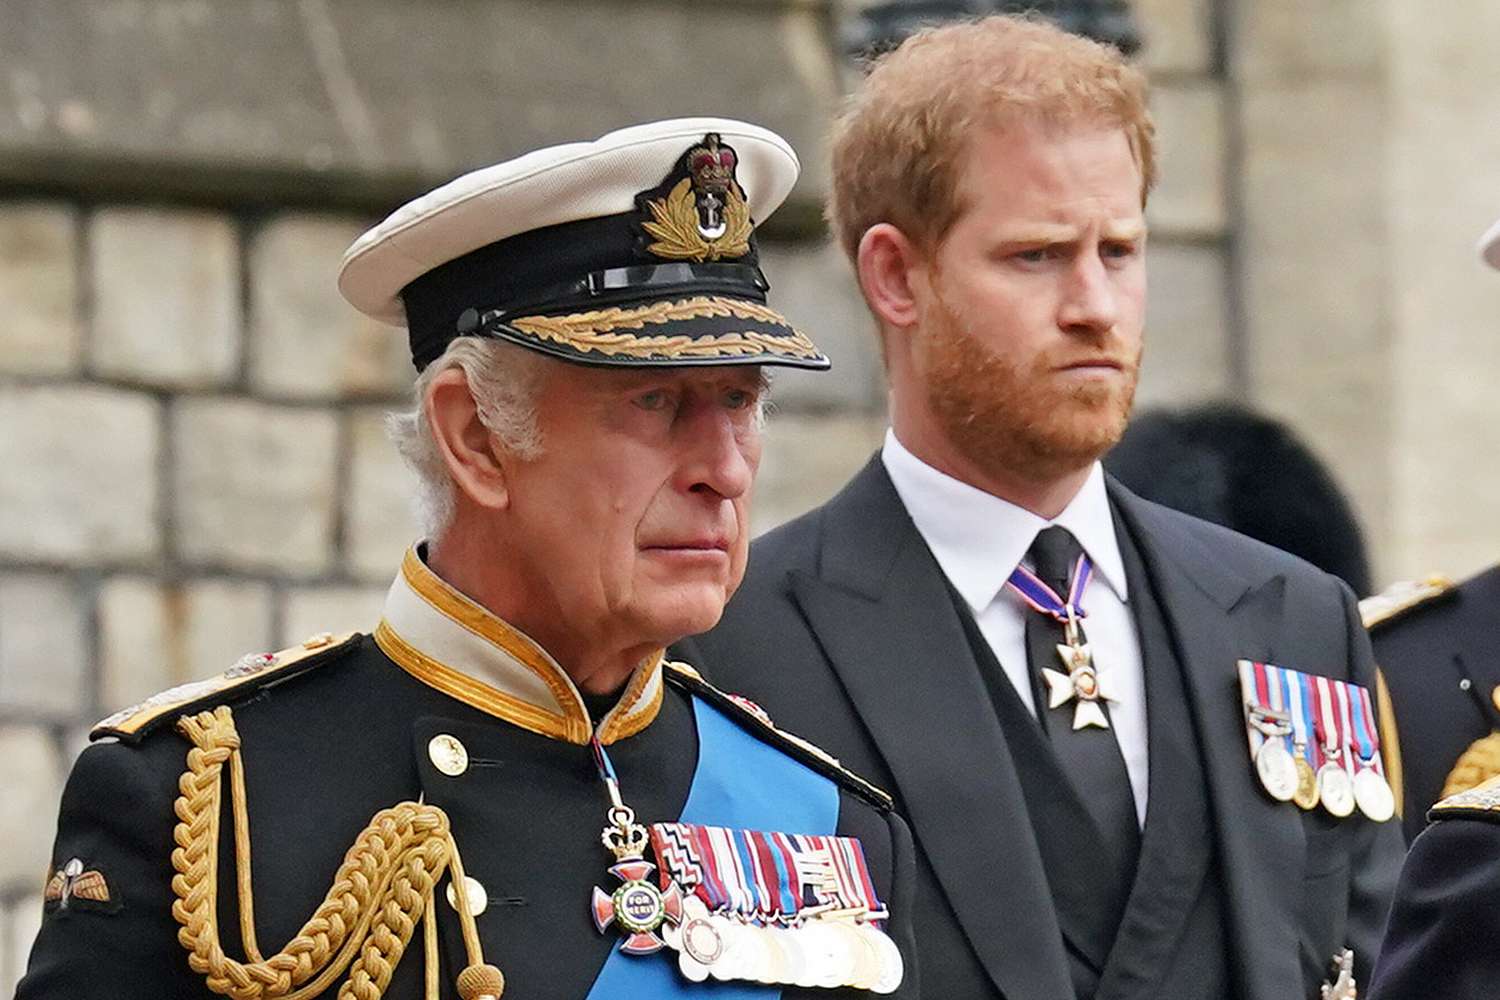 La confianza del rey Carlos III con el príncipe Harry desapareció hace mucho tiempo, afirma experto real